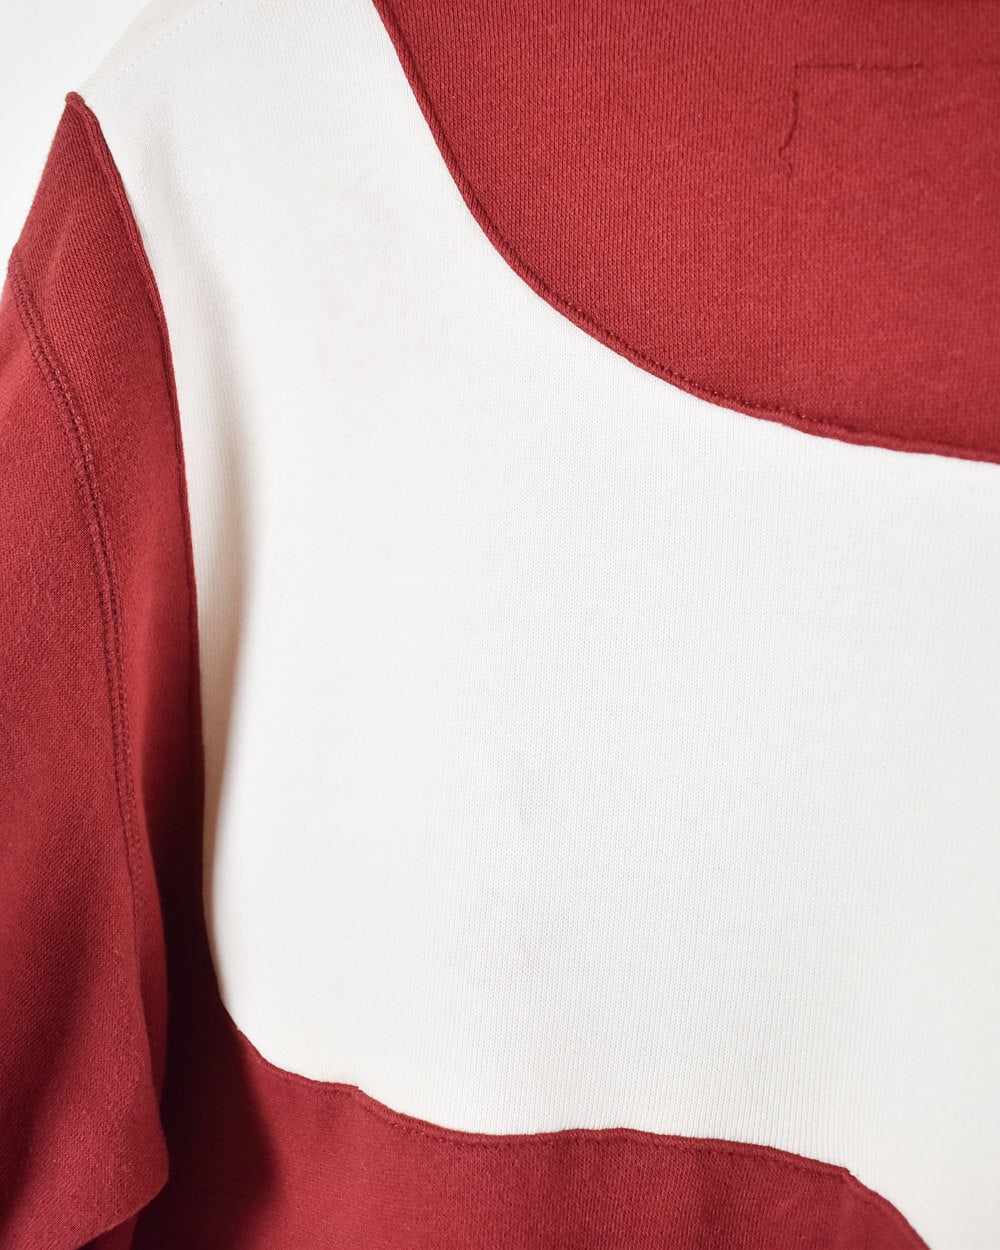 Red Nike Rework Ohio State Sweatshirt - Medium